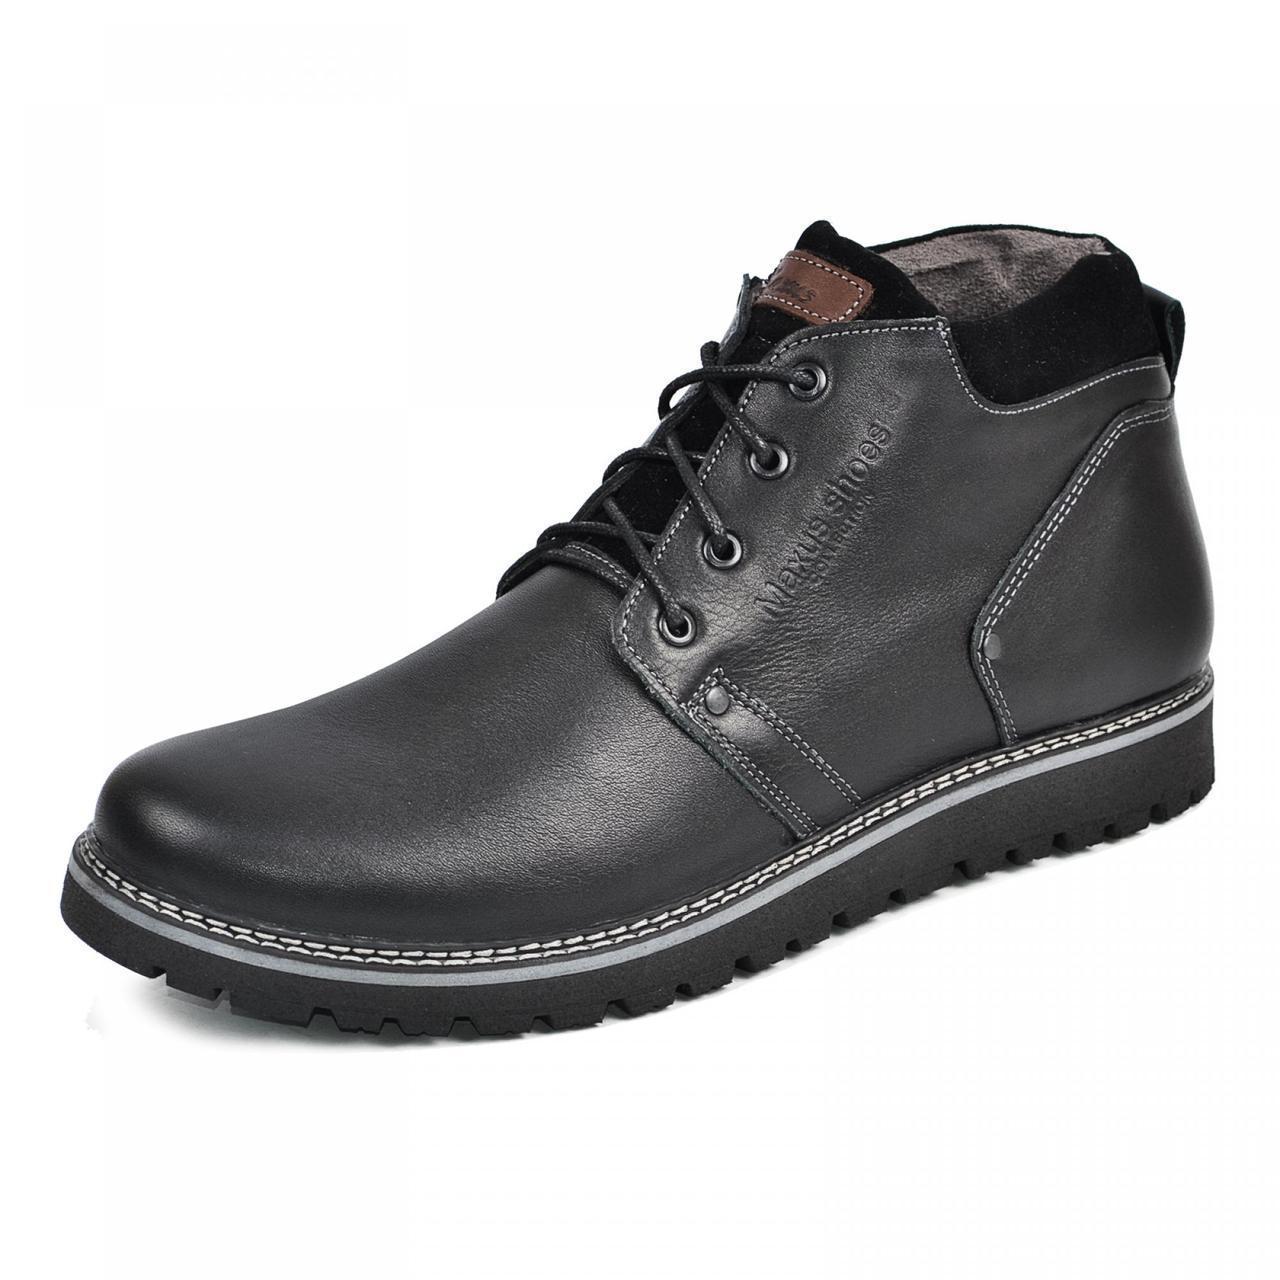 Розмір 48 - устілка 32 сантиметра  Чоловічі зимові комфортні шкіряні черевики на хутрі, чорні  Maxus 82